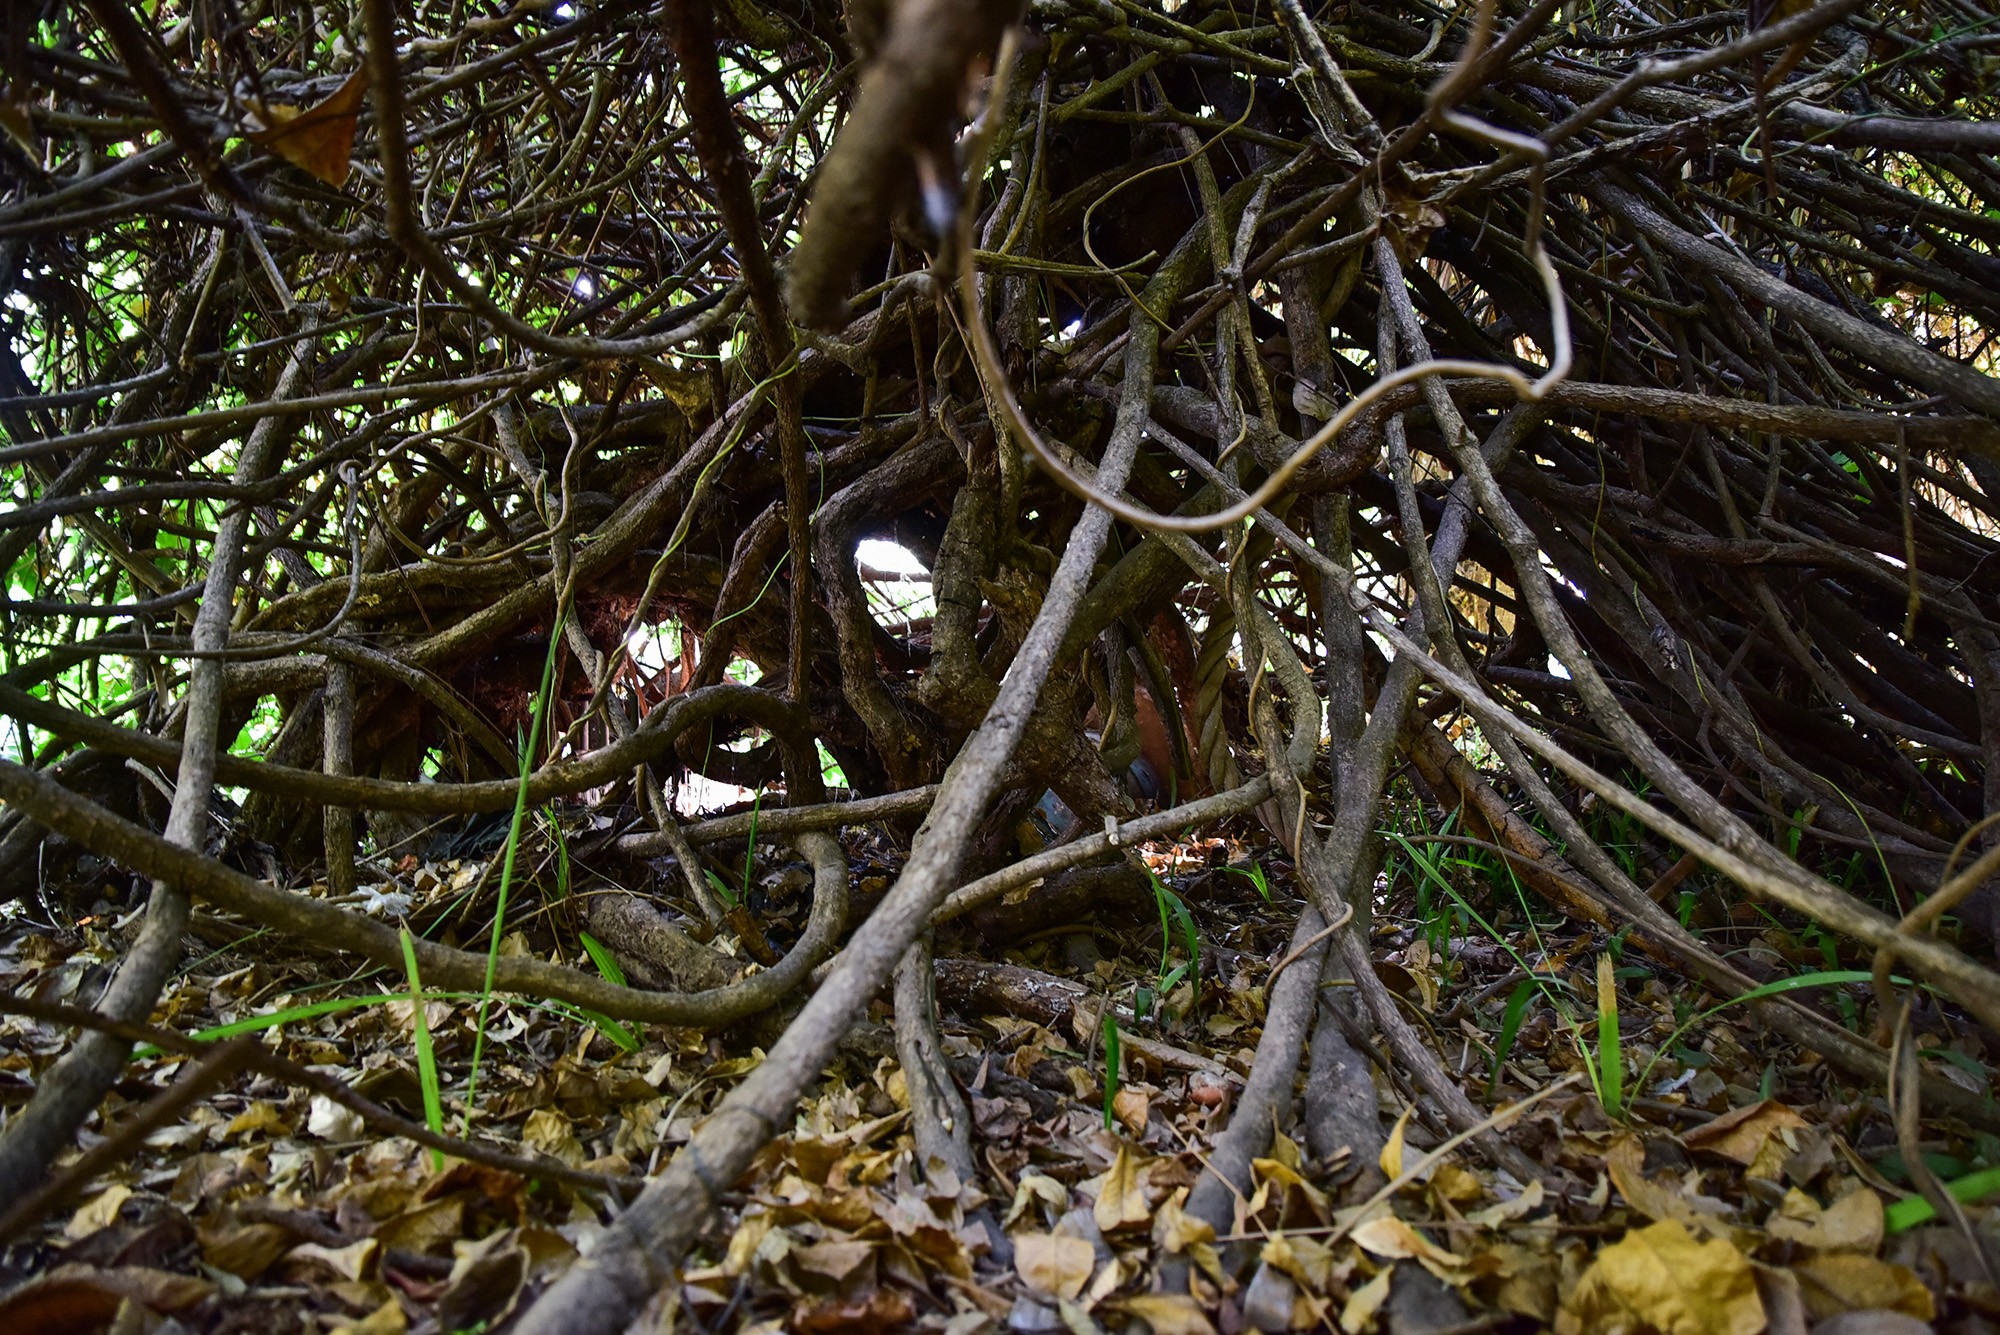 “Cụ” dây gùi này còn lâu năm hơn cả Thảo Cầm Viên, được nhân viên sở thú xem như “cây thần”, chăm sóc cẩn thận, lắp hệ thống giá đỡ cho cây phát triển.